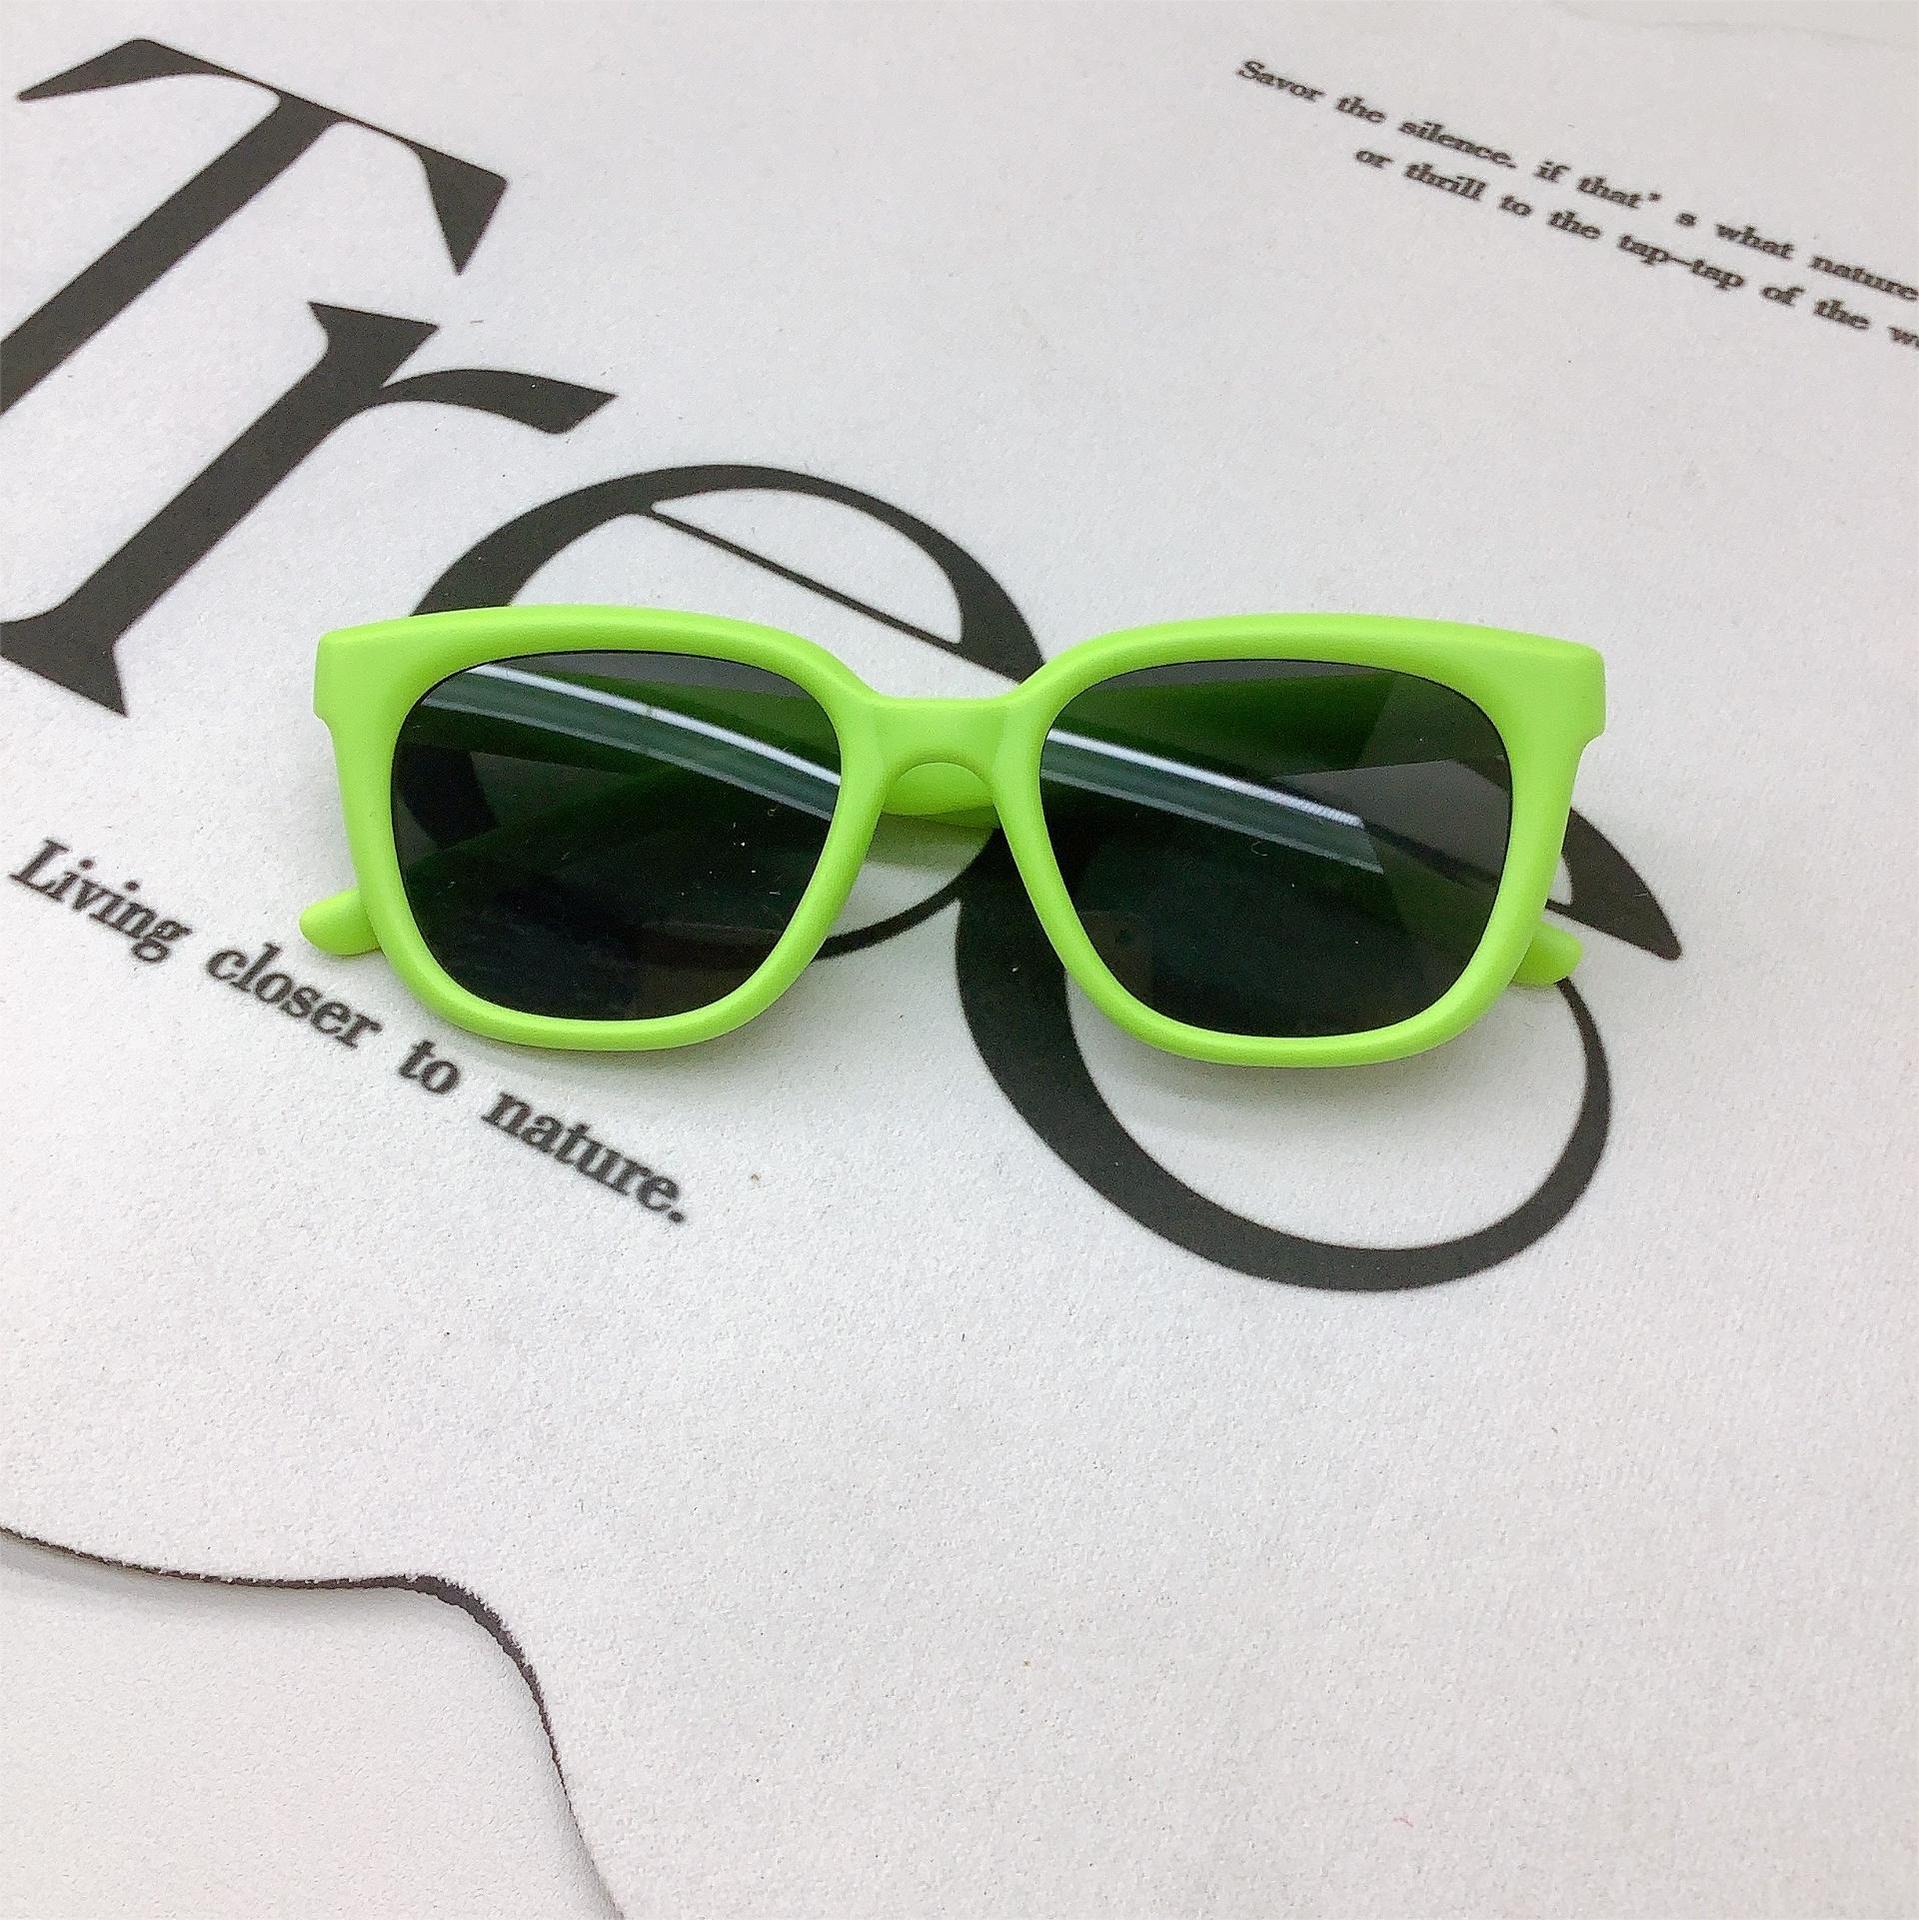 Retro Fashion New Kids Sunglasses Korean Fashion Baby Sunglasses Sun Protection UV Protection Sun-Shade Glasses